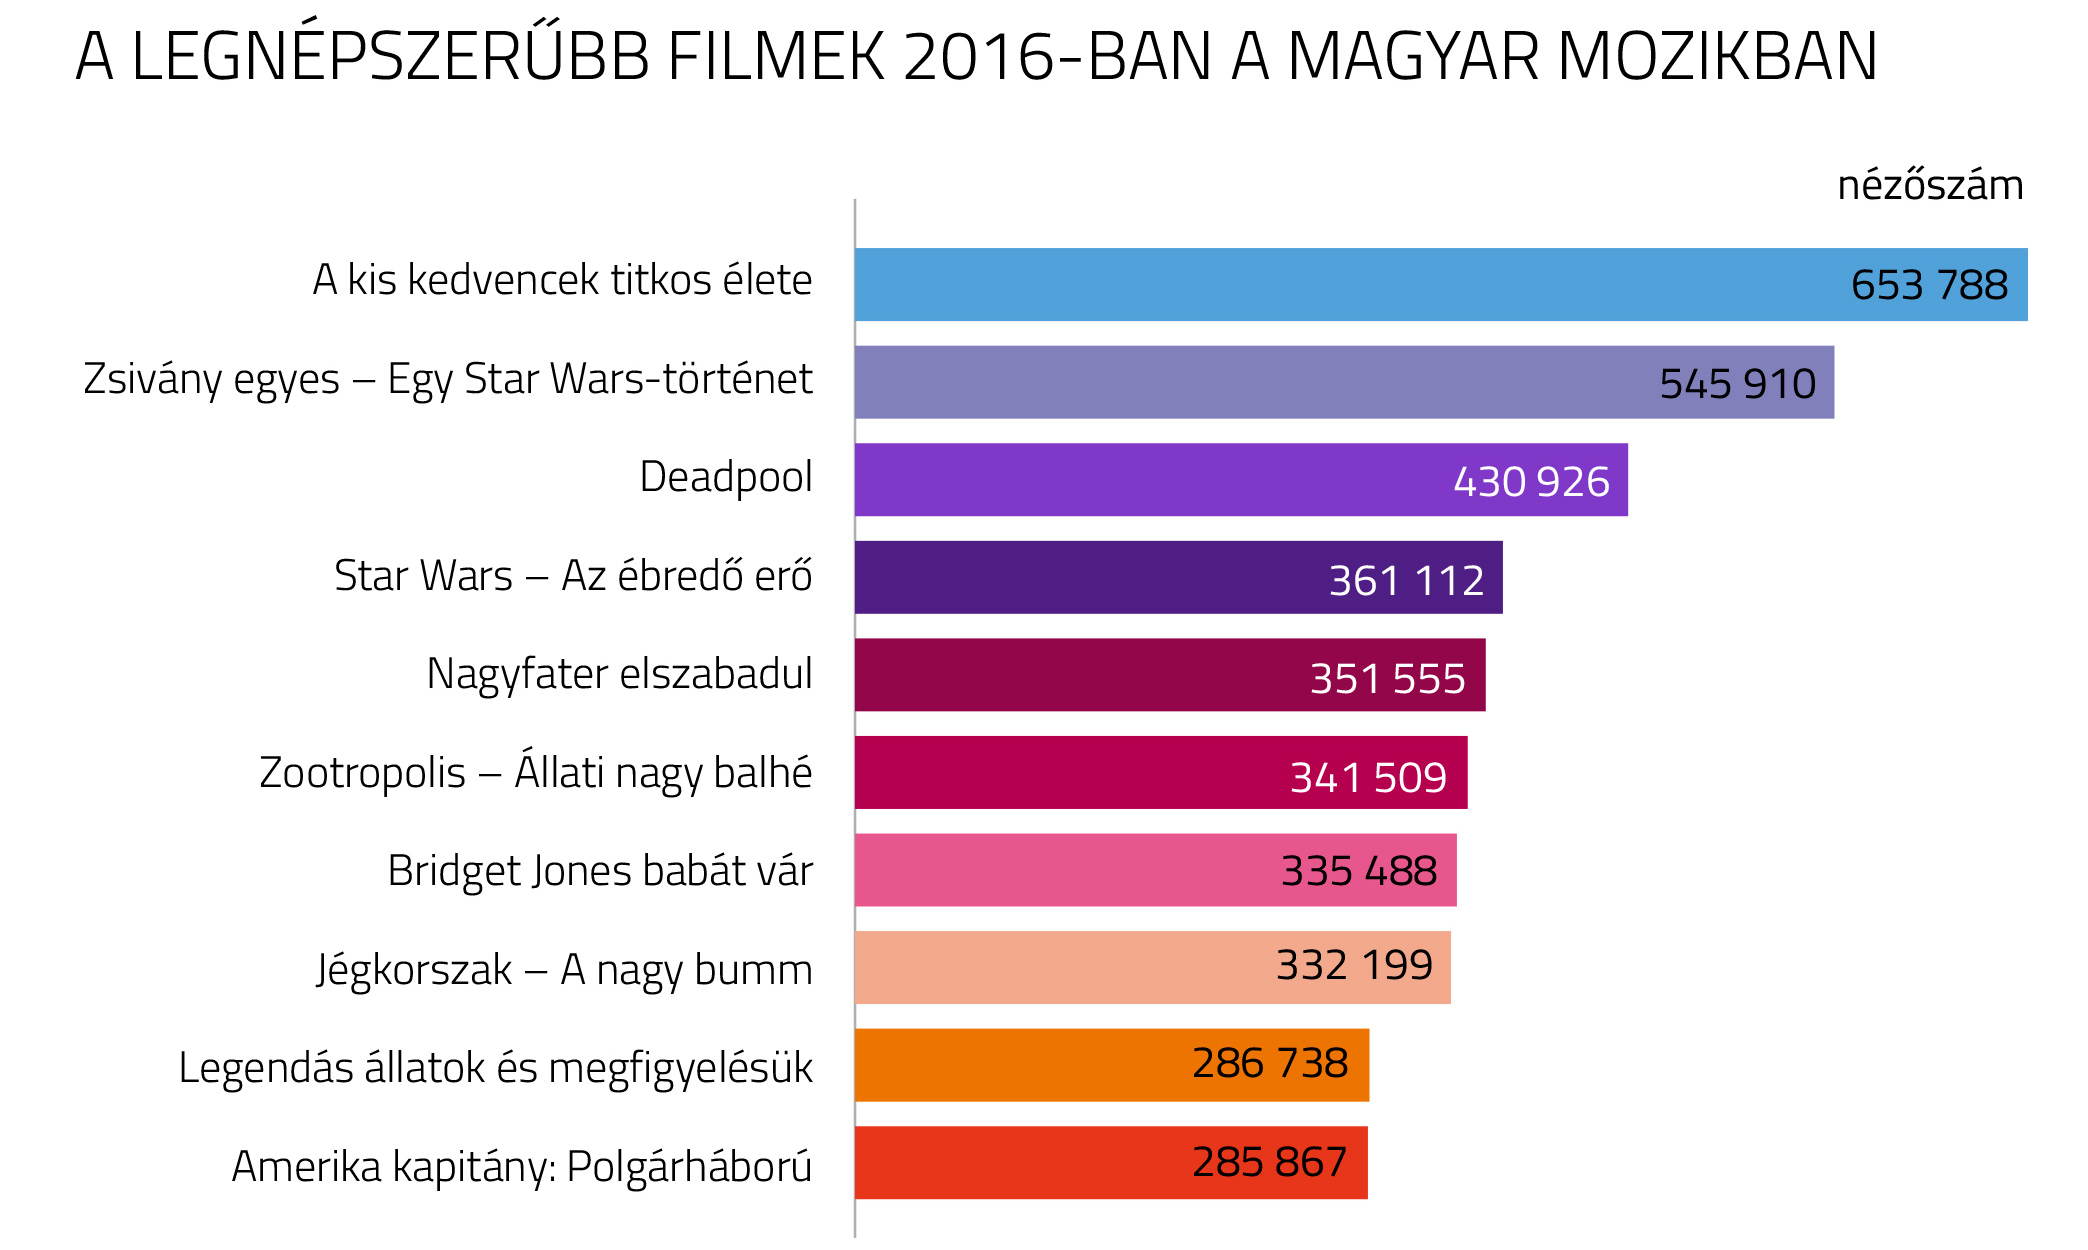 legnépszerűbb filmek 2016